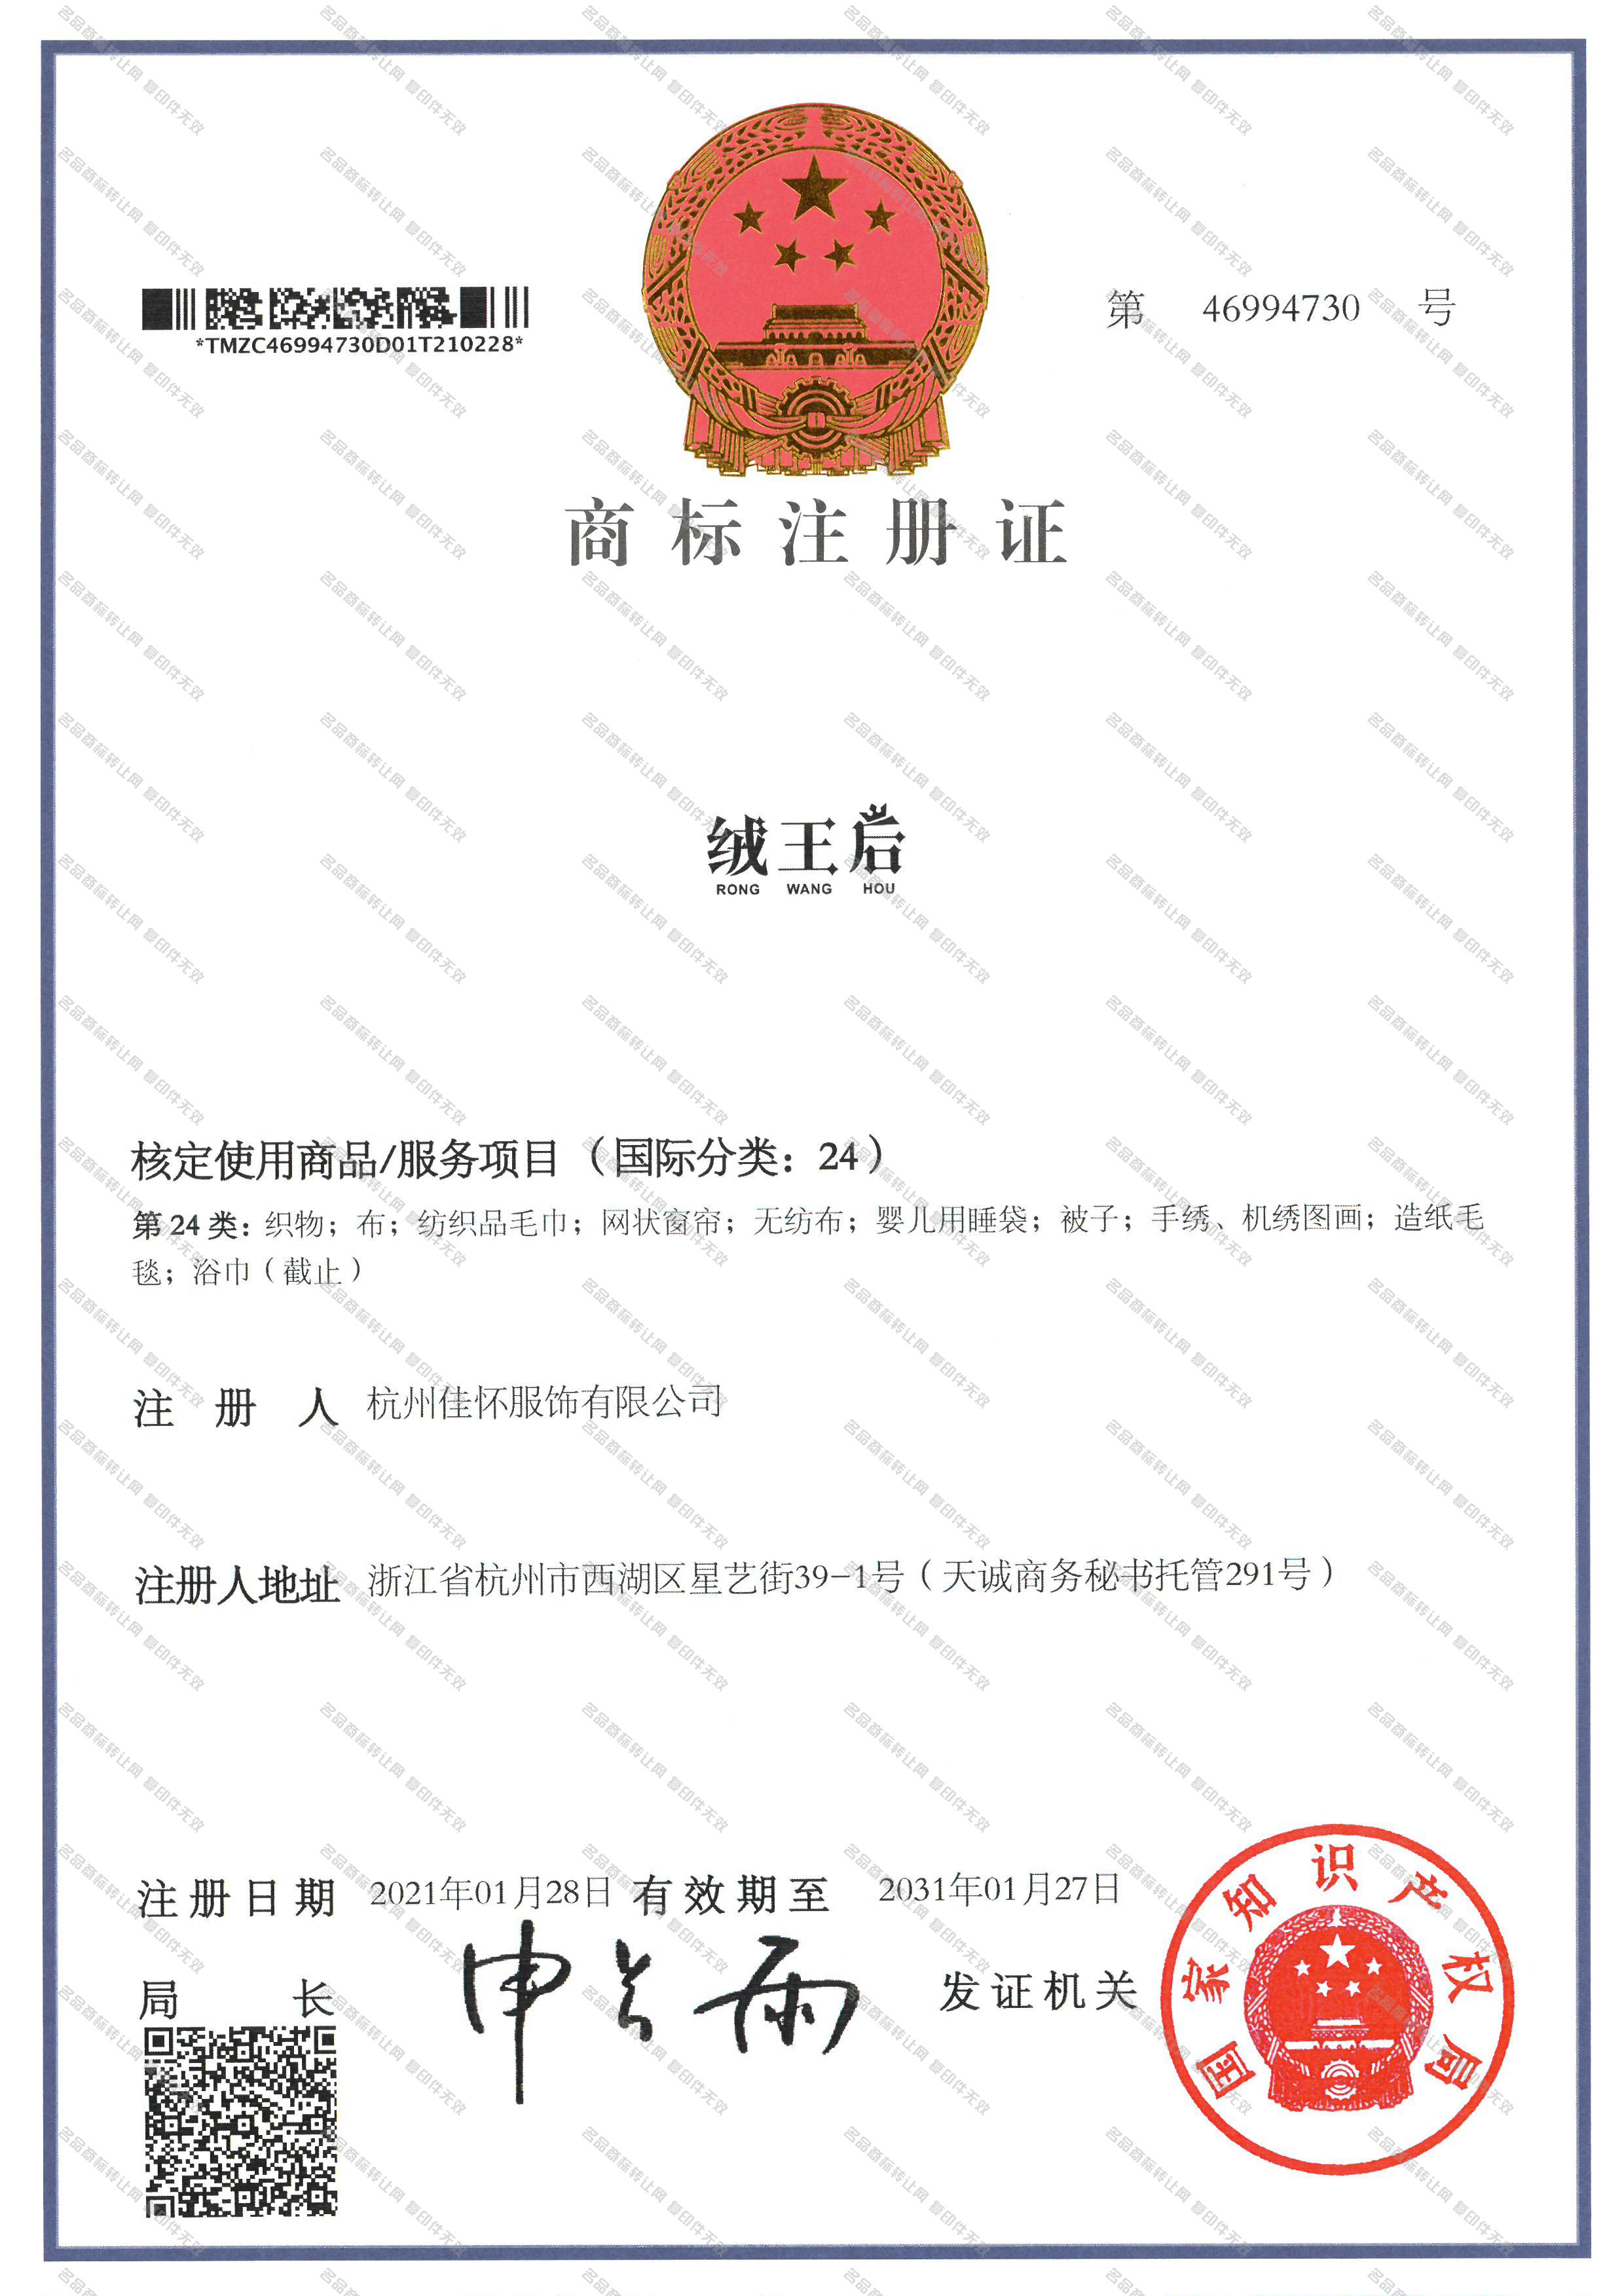 绒王后;RONGWANGHOU注册证